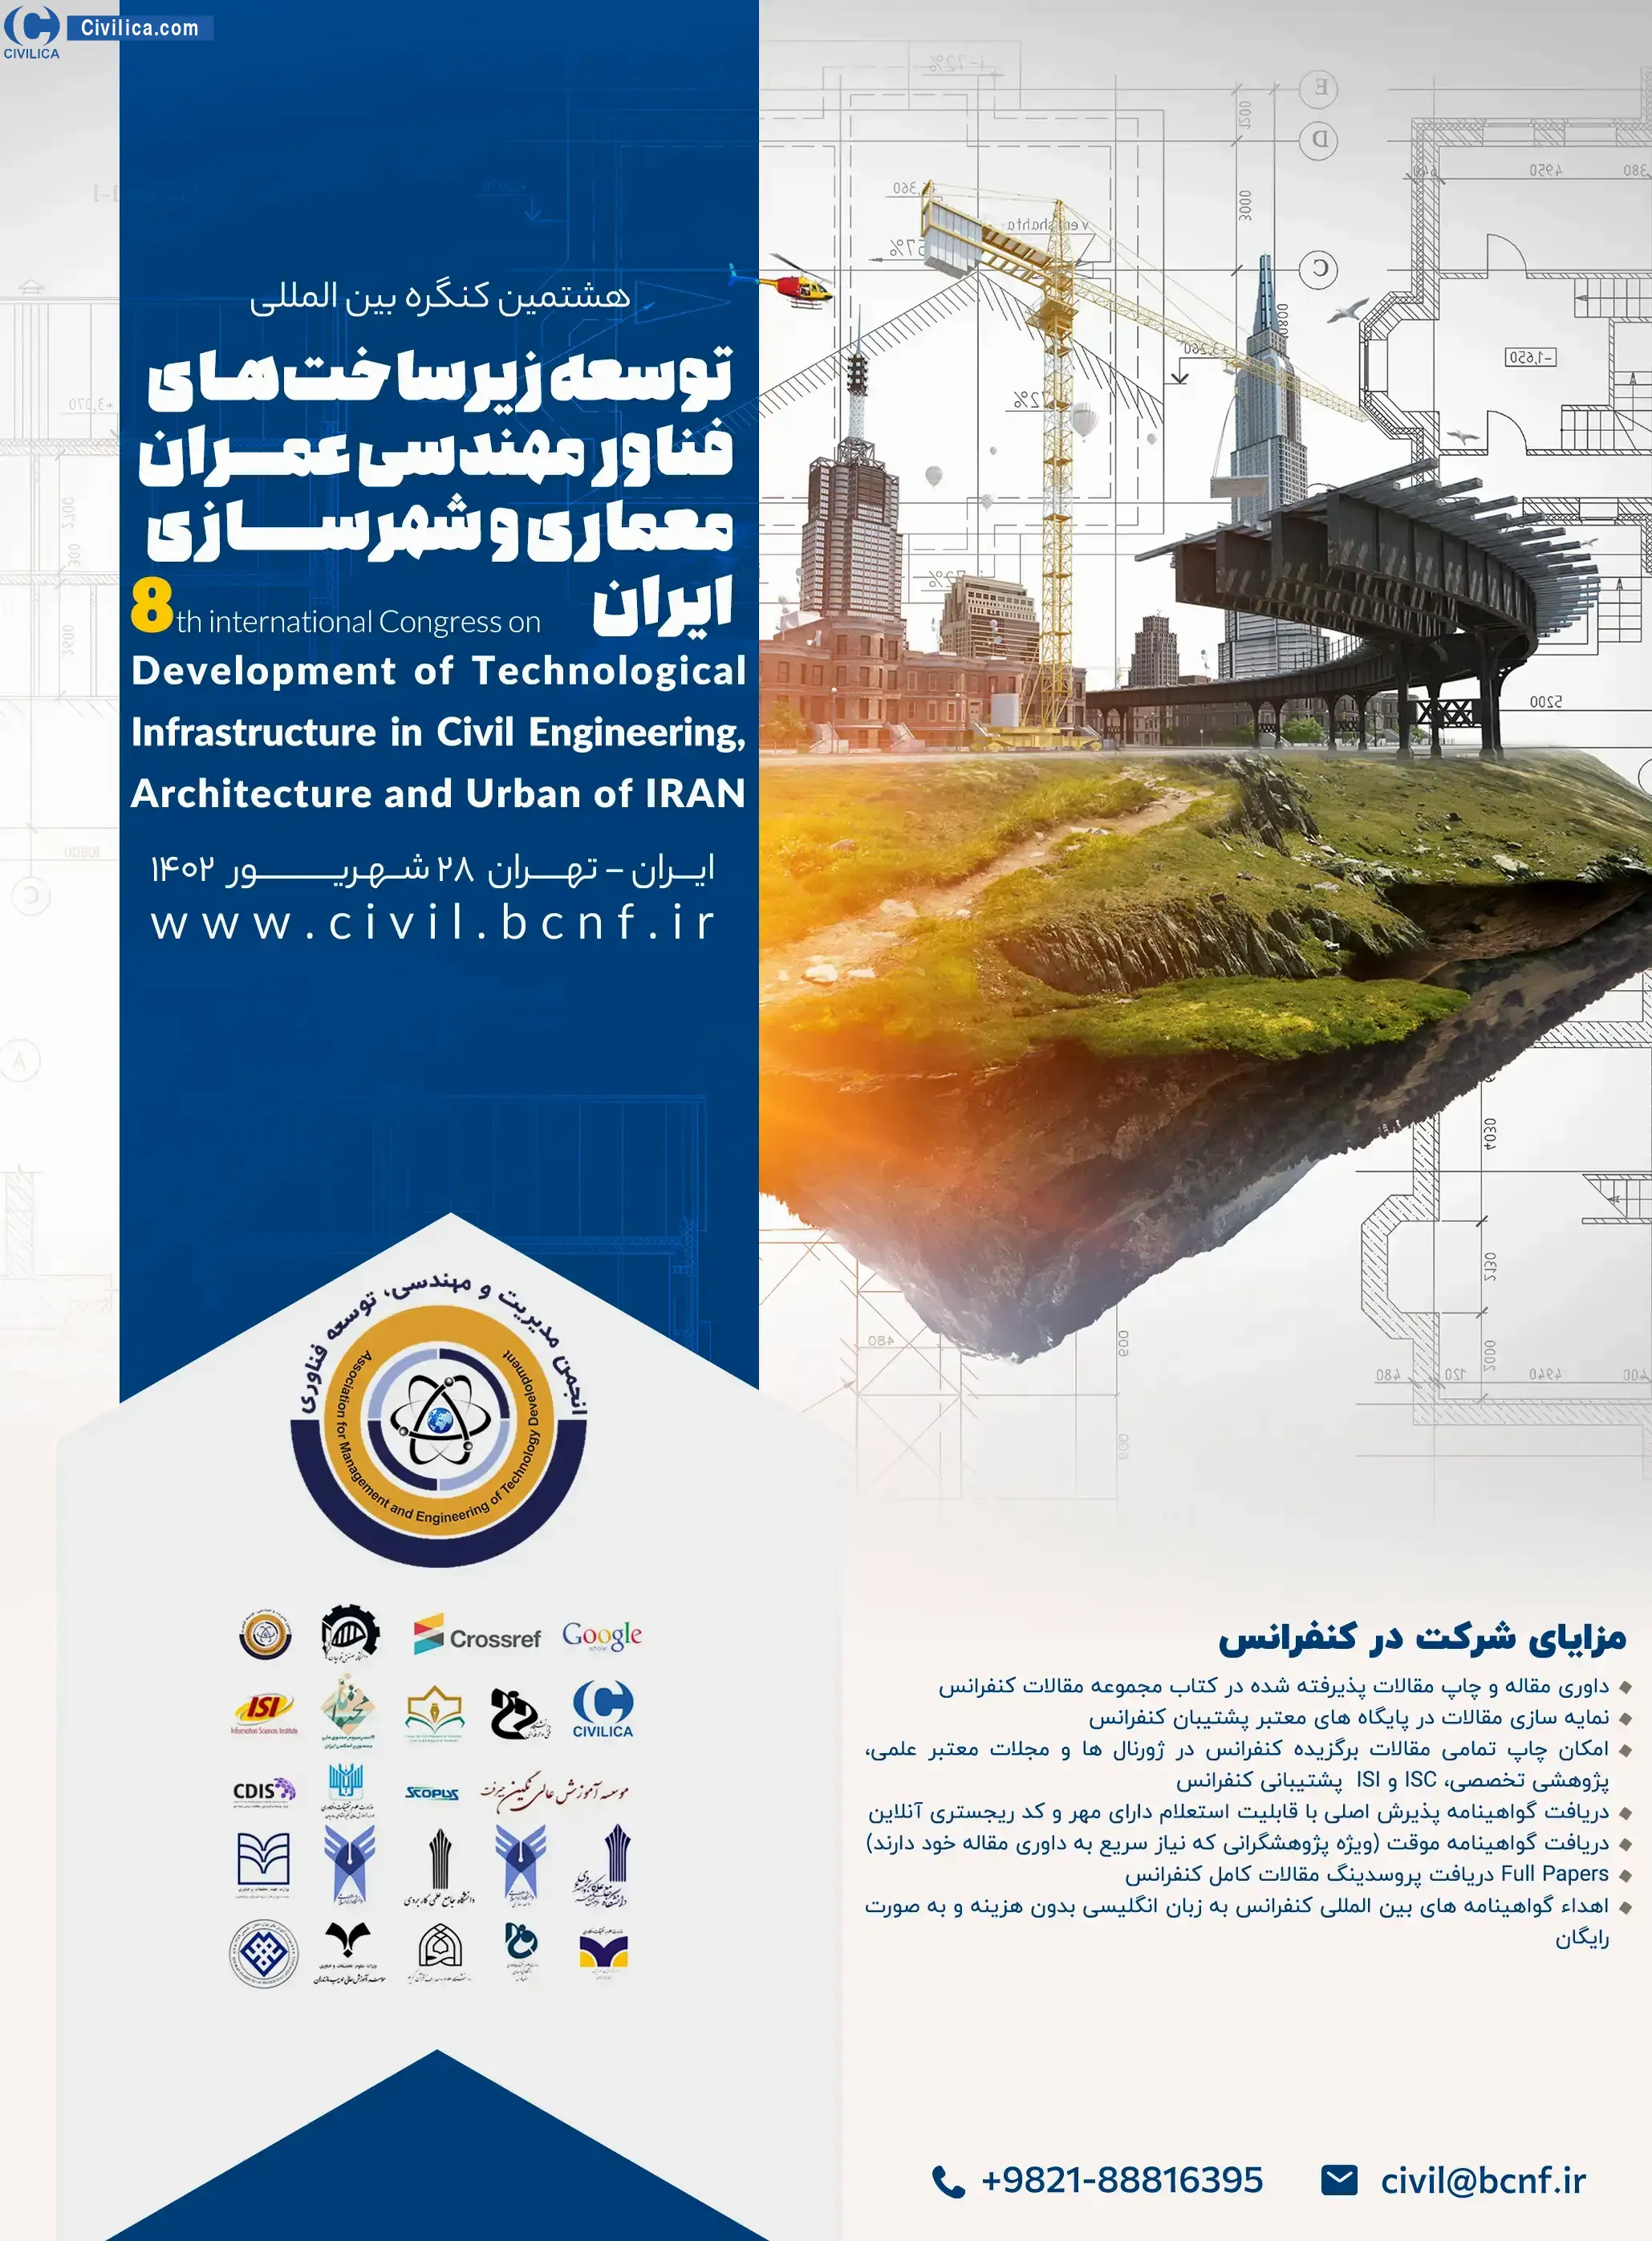 فراخوان مقاله هشتمین کنگره بین المللی توسعه زیرساخت های فناور مهندسی عمران، معماری و شهرسازی ایران